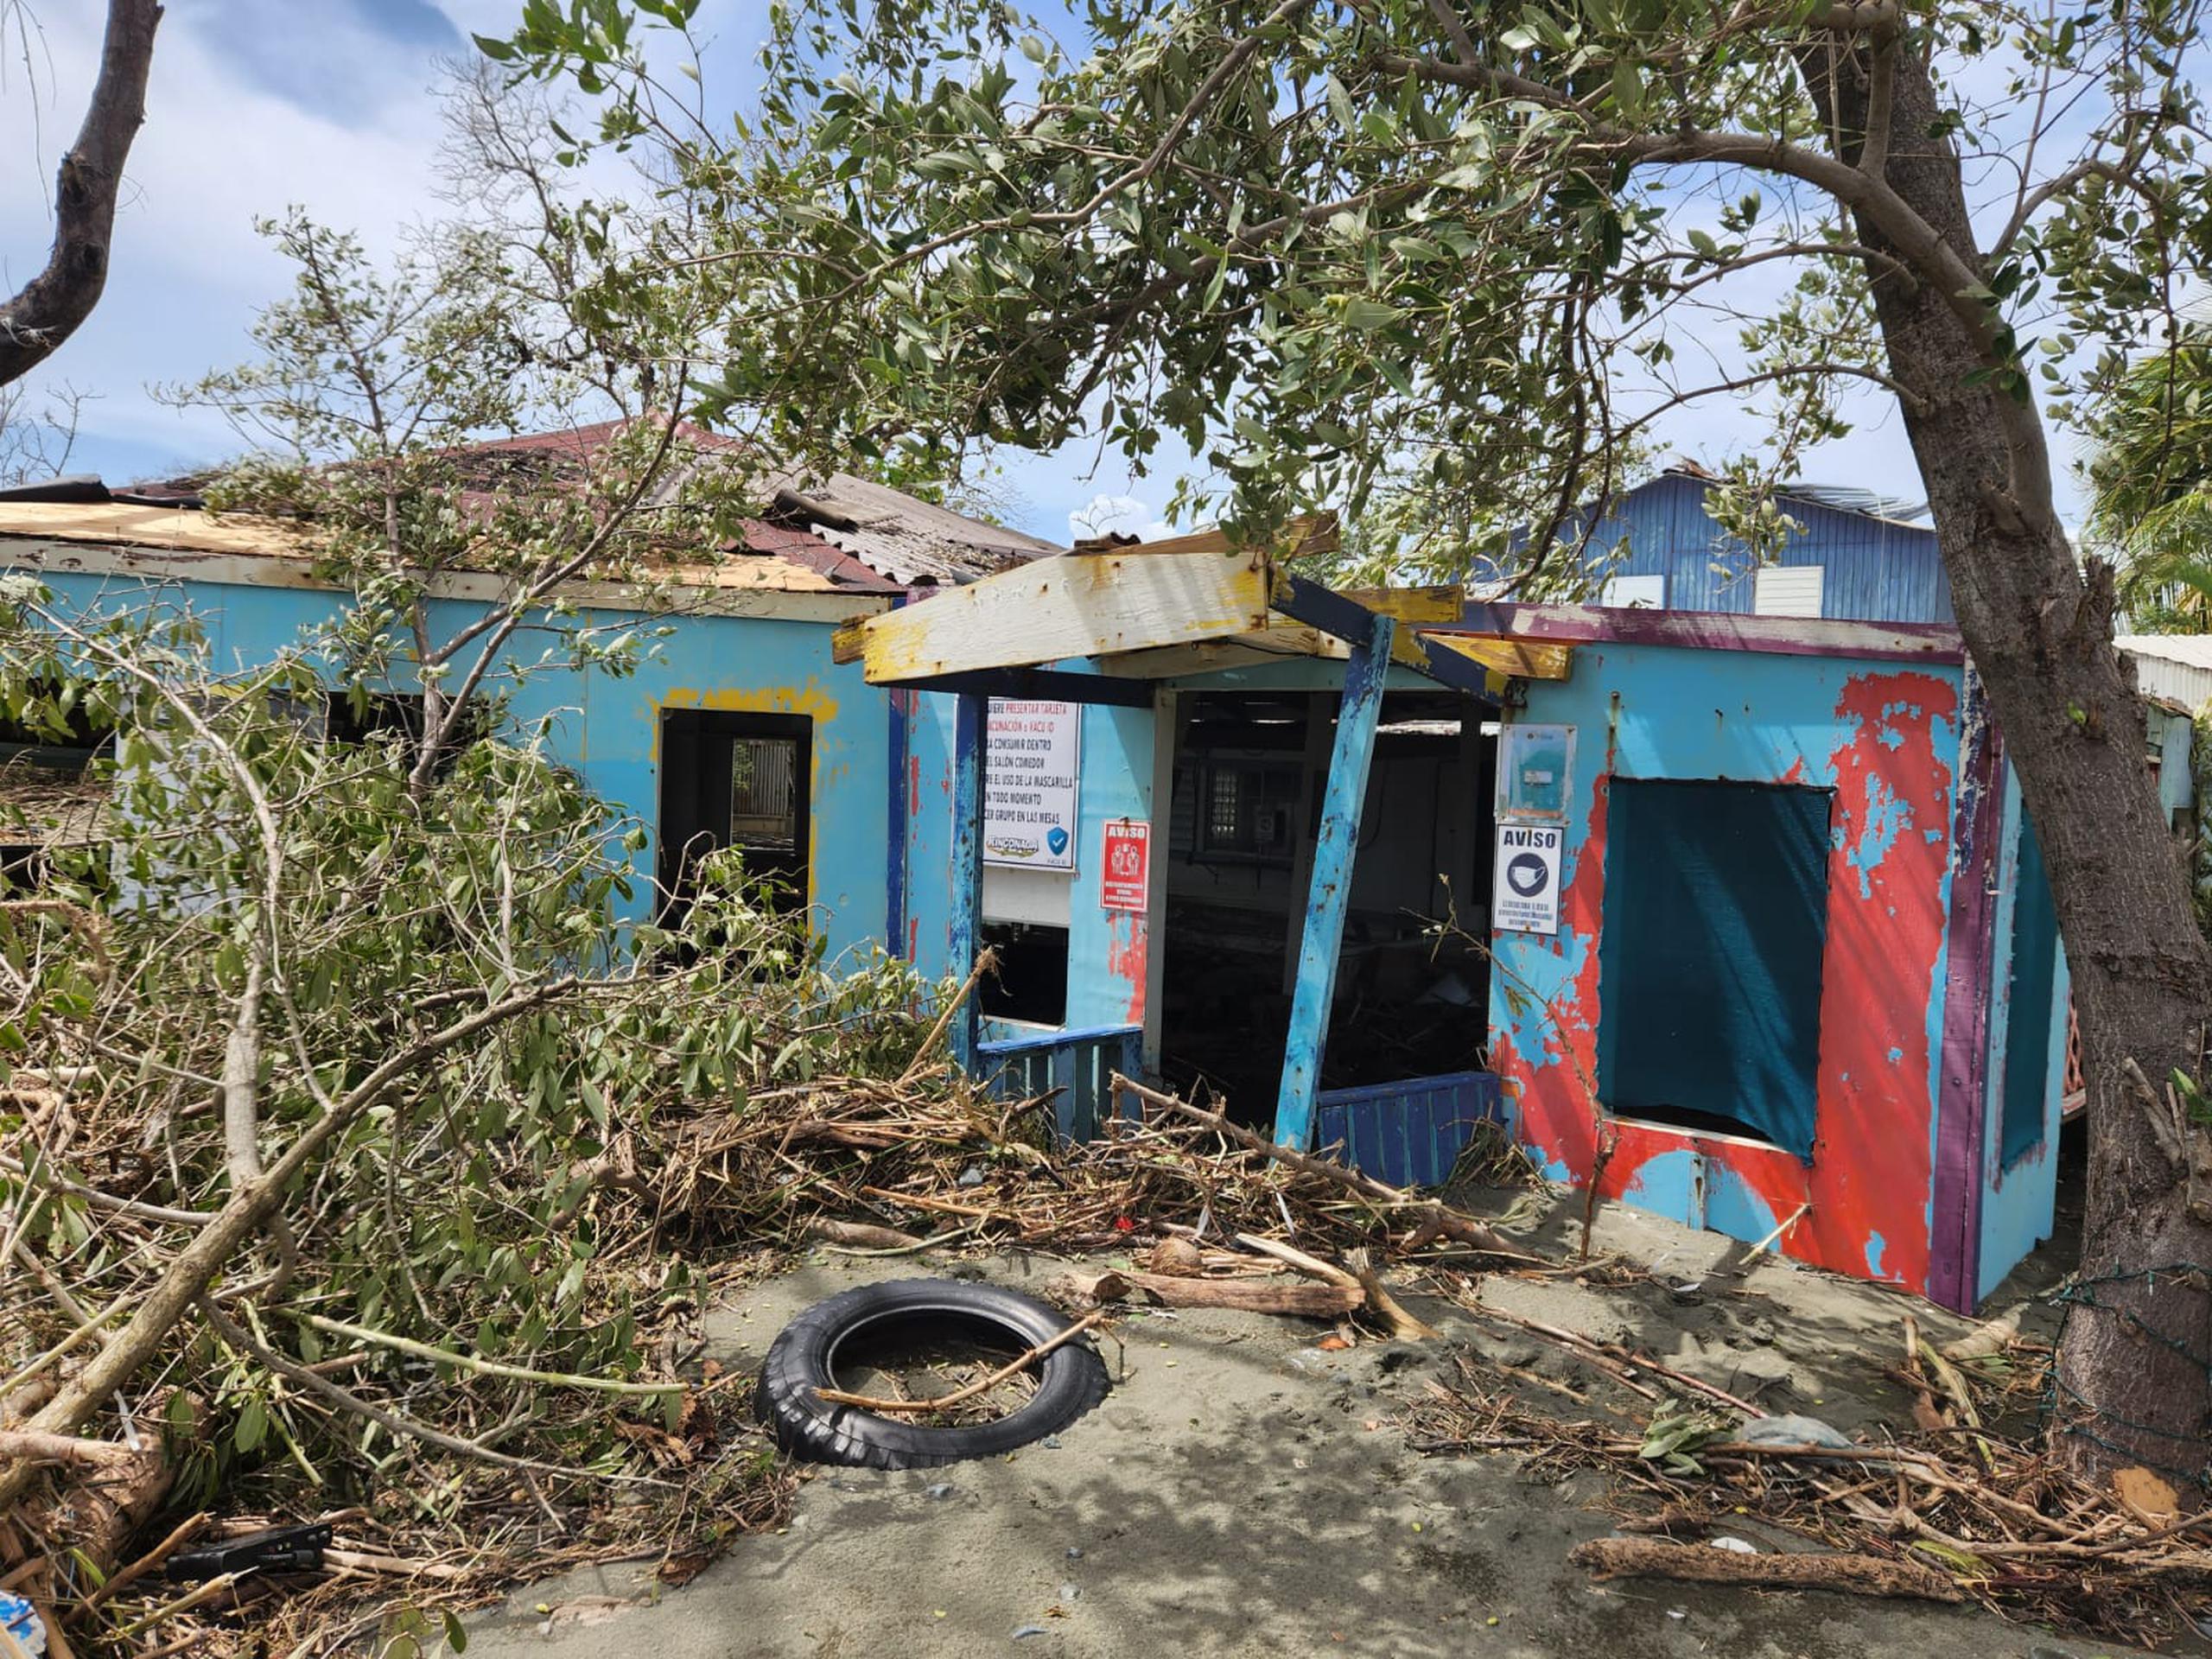 La marejada ciclónica ocasionada por el huracán Fiona arrasó con residencias y negocios en el litoral costero de Guayanilla.